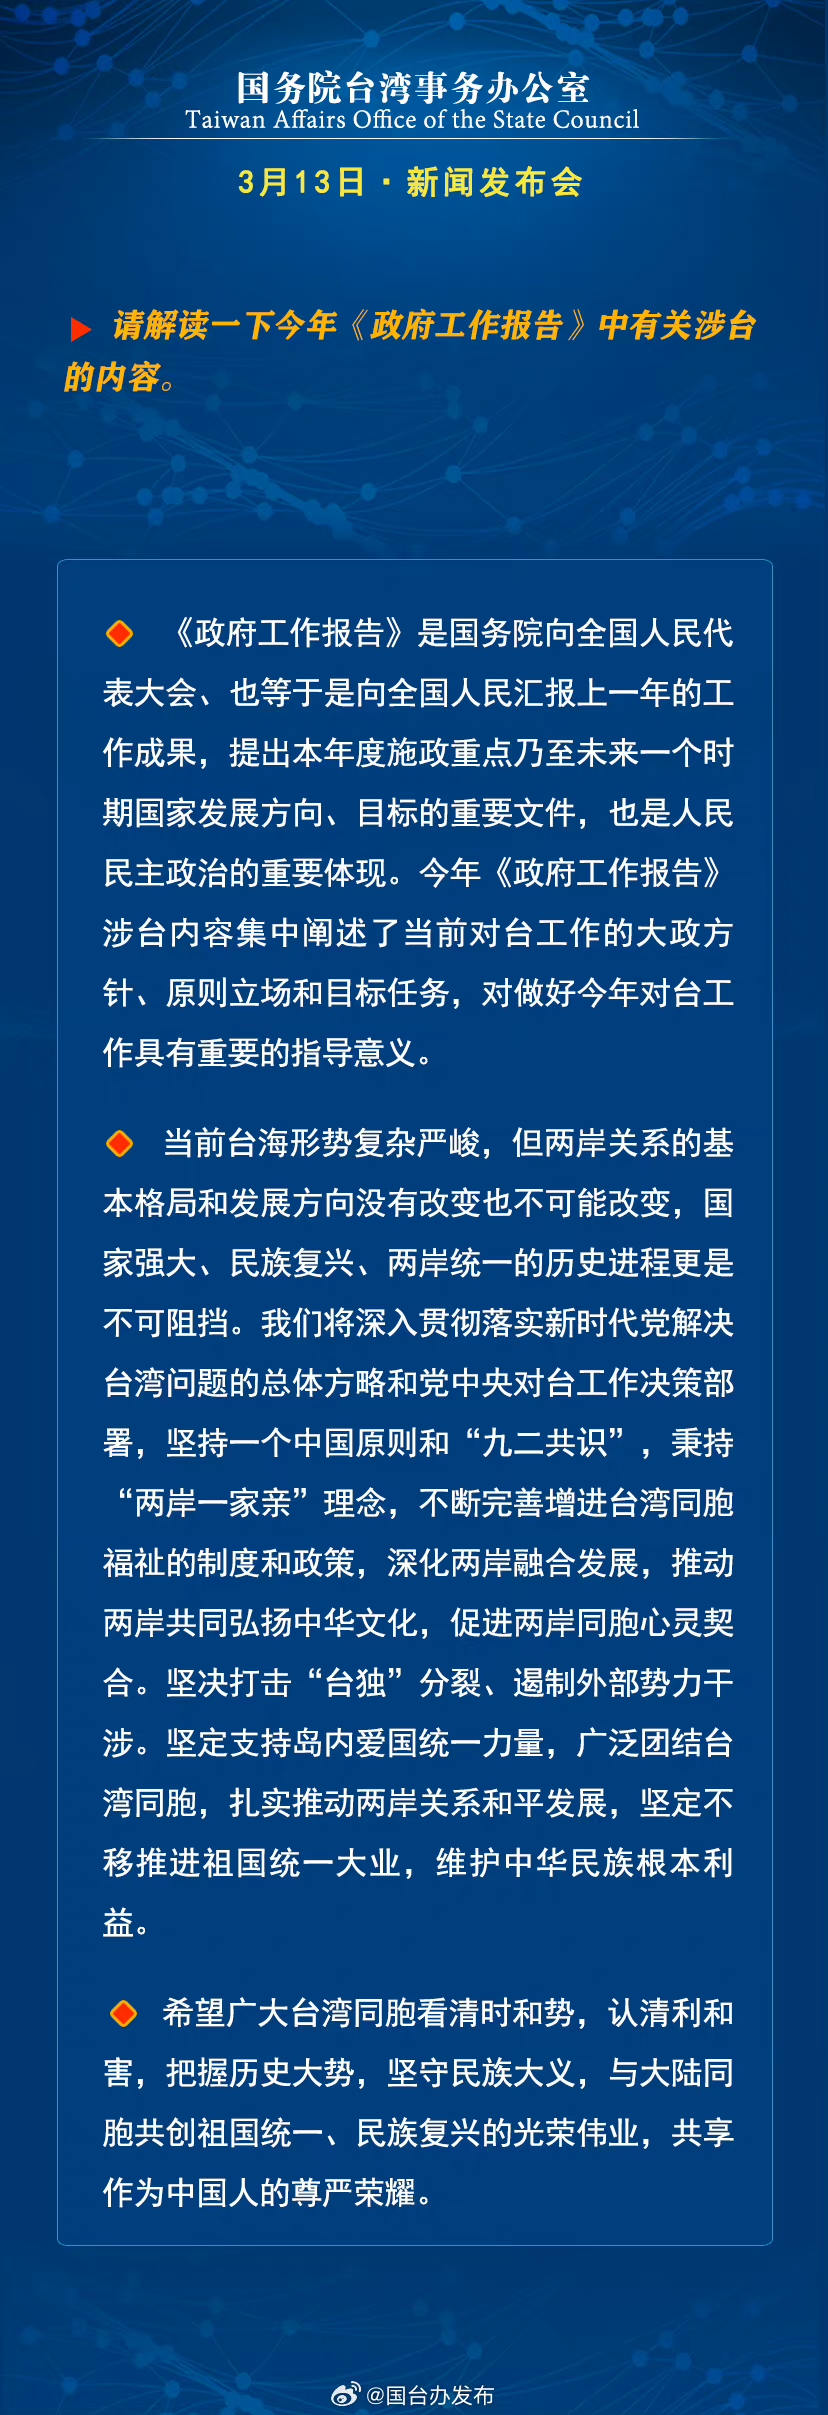 國務院台灣事務辦公室3月13日·新聞發佈會